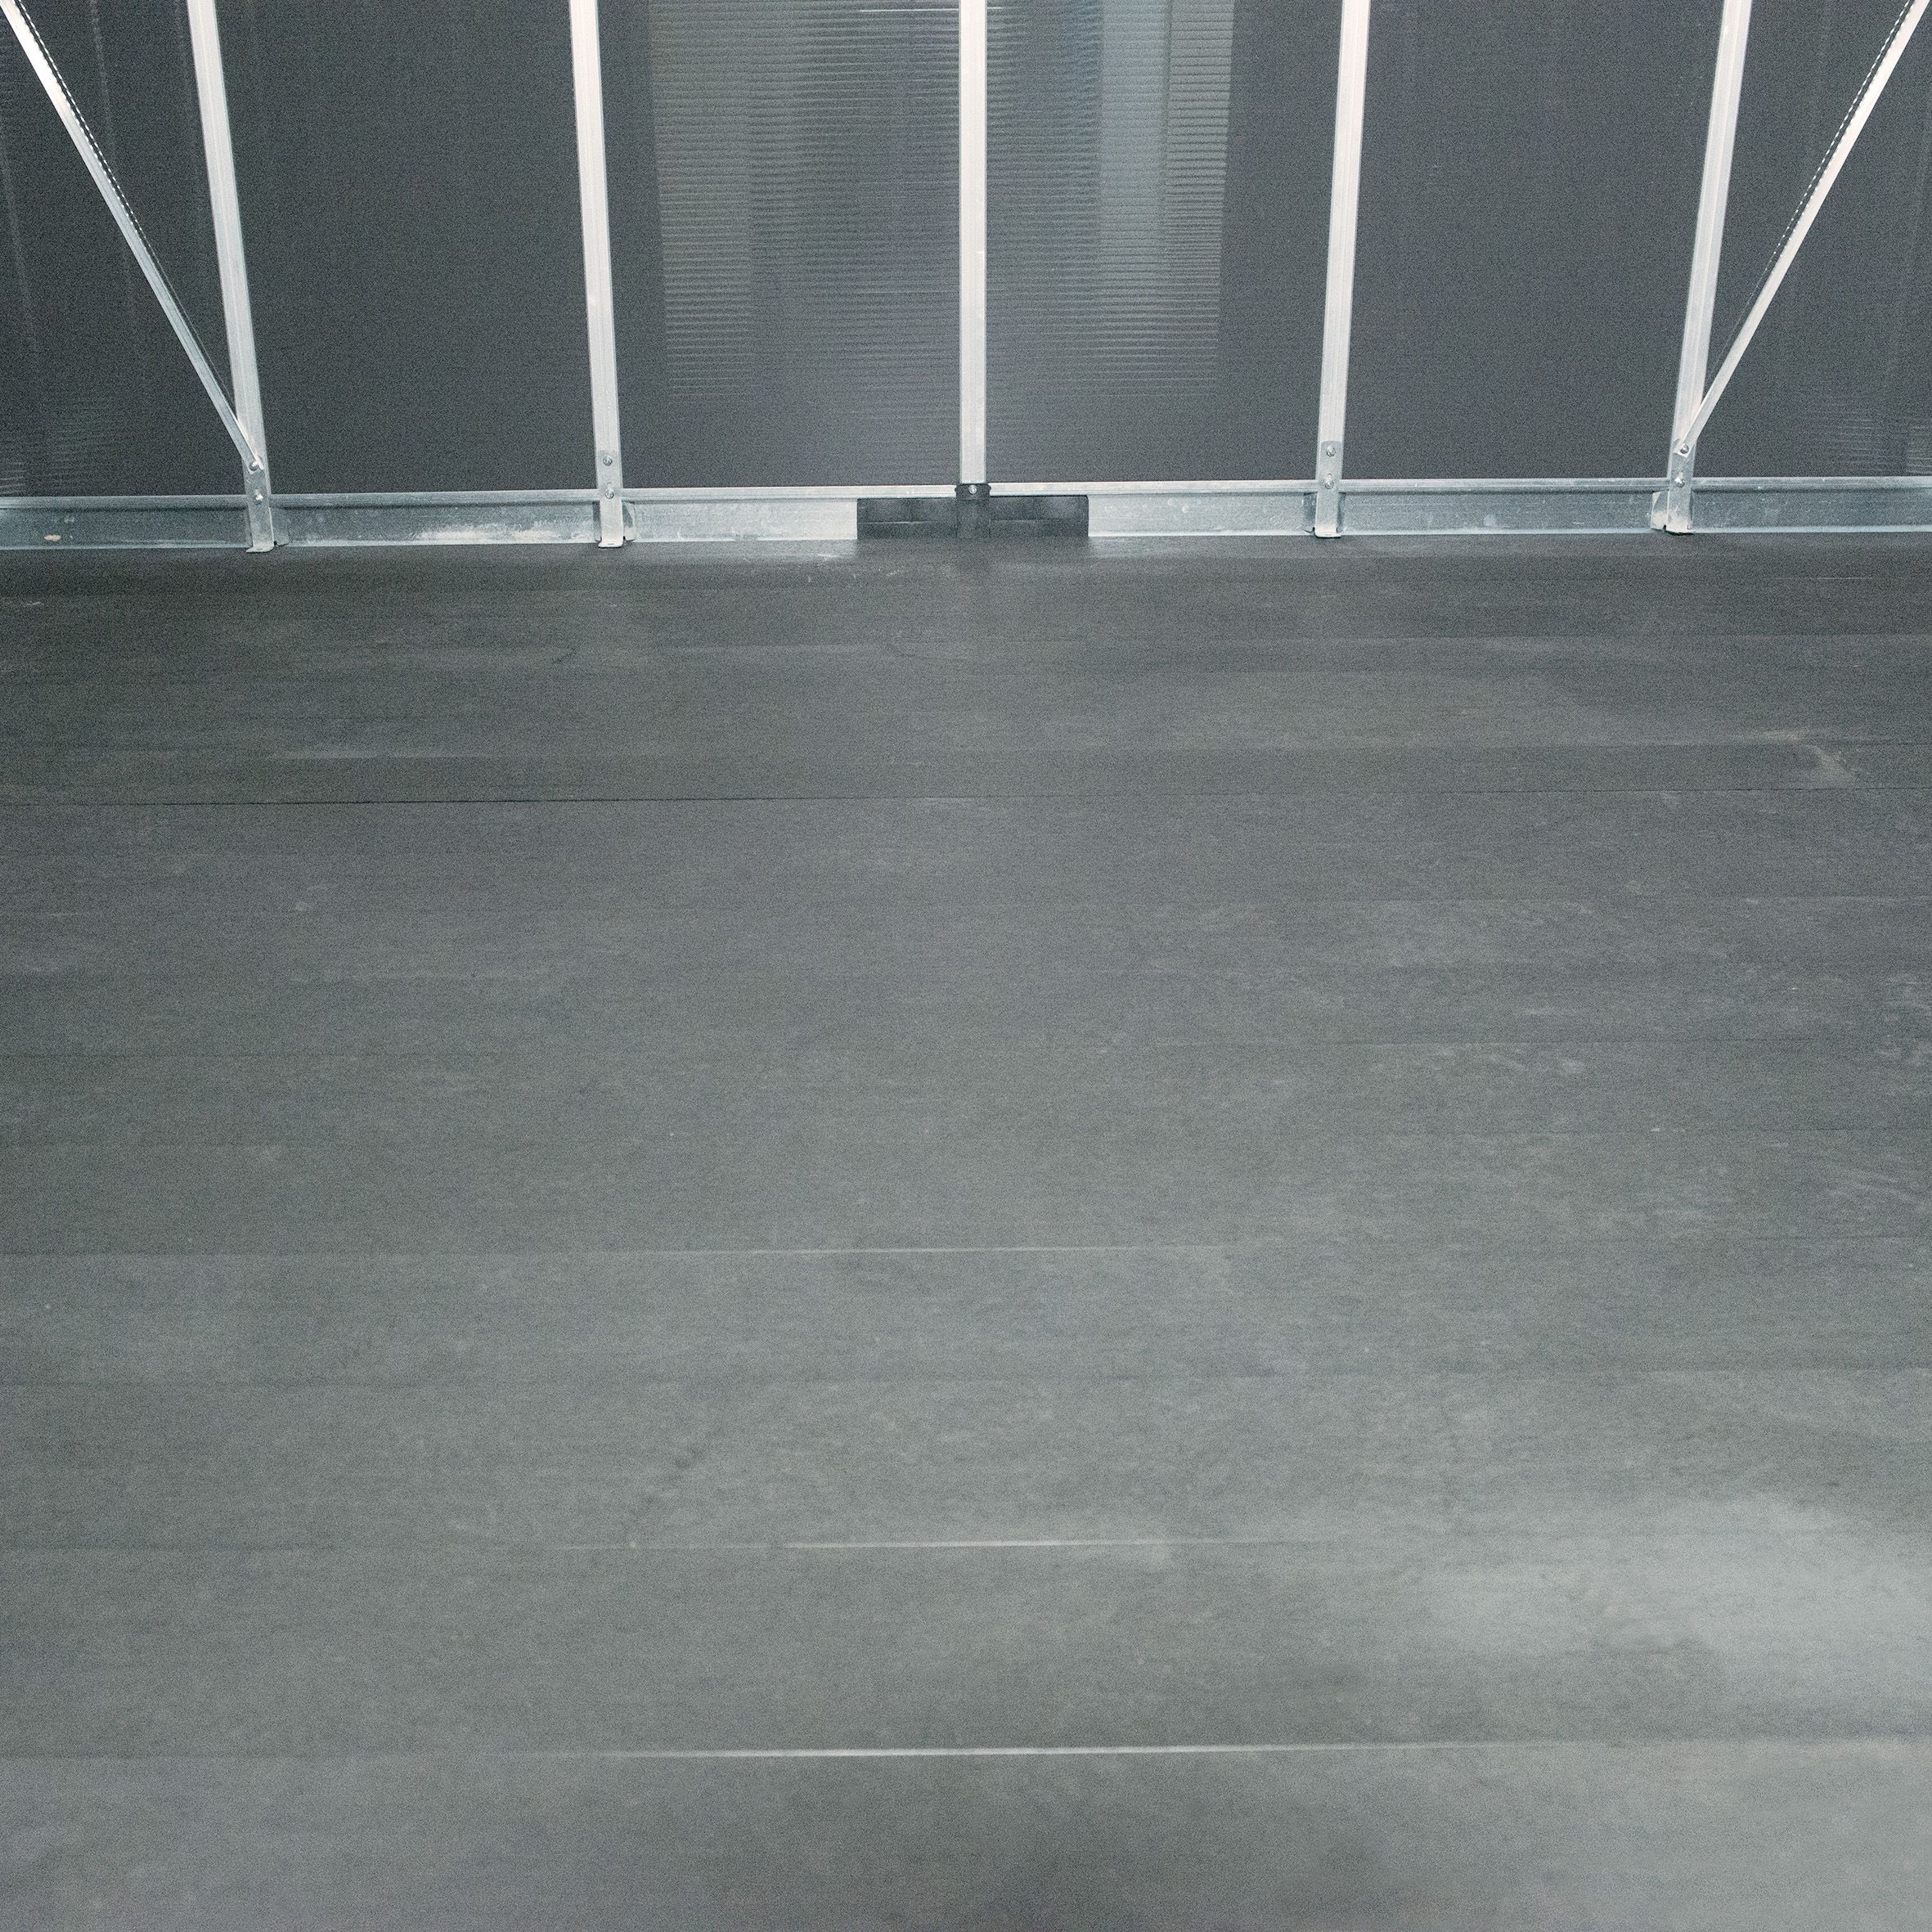 Palram - Canopia Yukon with WPC floor 11x21 ft Apex Dark grey Plastic 2 door Shed with floor